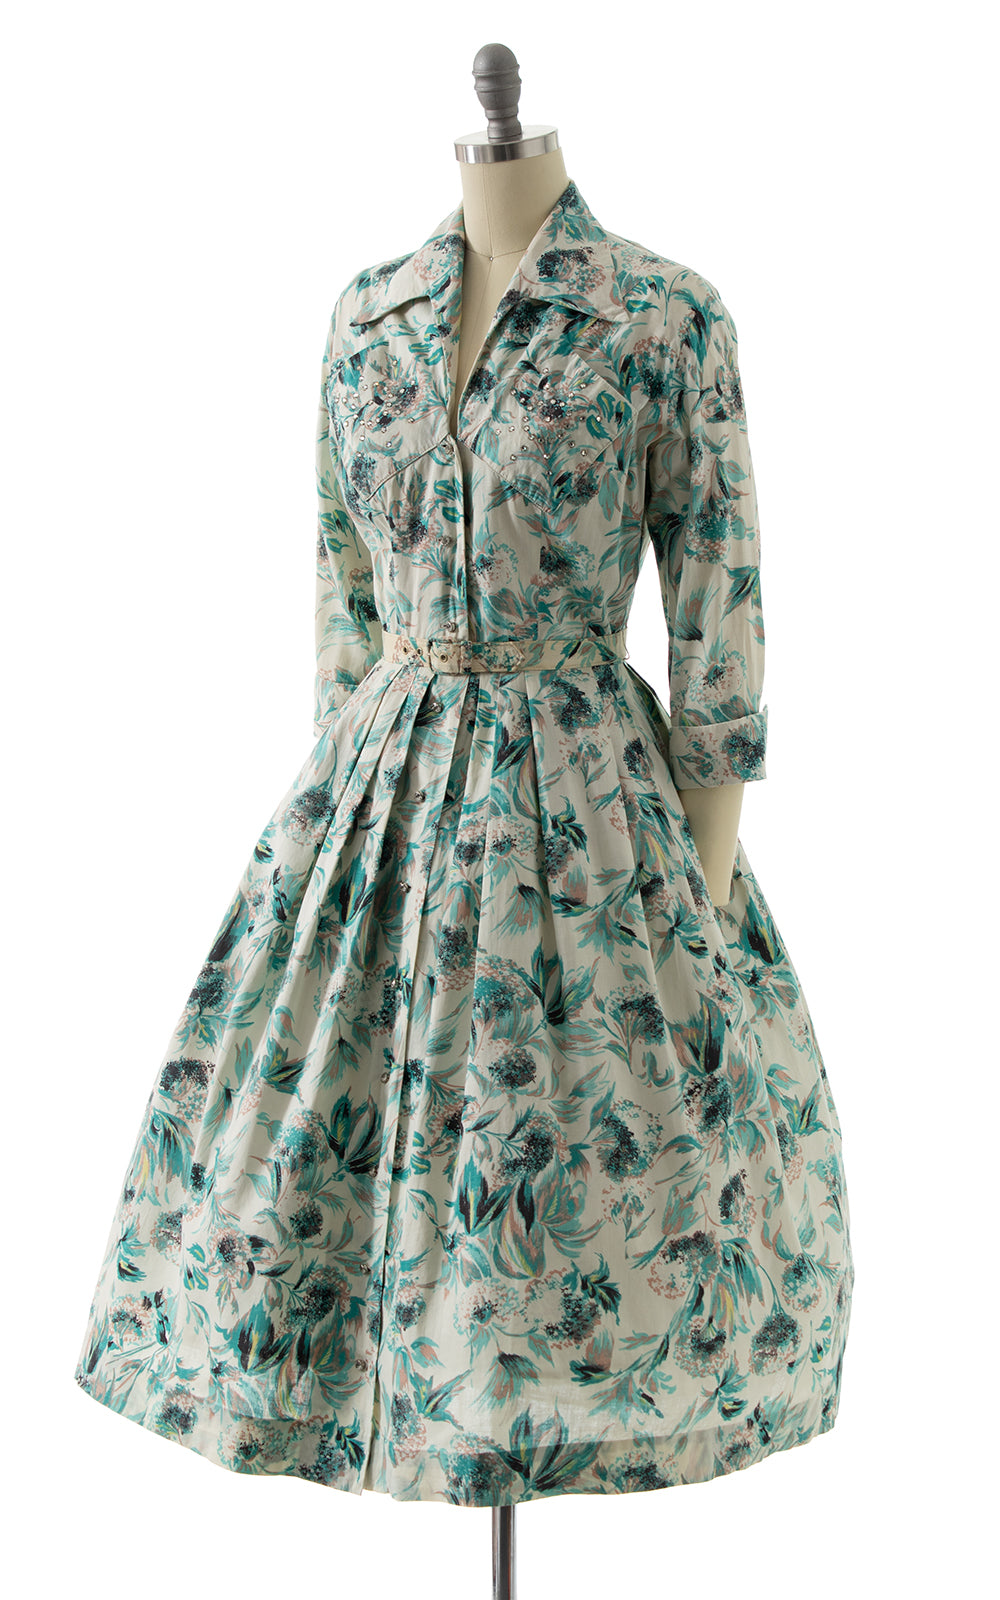 1950s Rhinestone Floral Cotton Shirtwaist Dress BirthdayLifeVintage